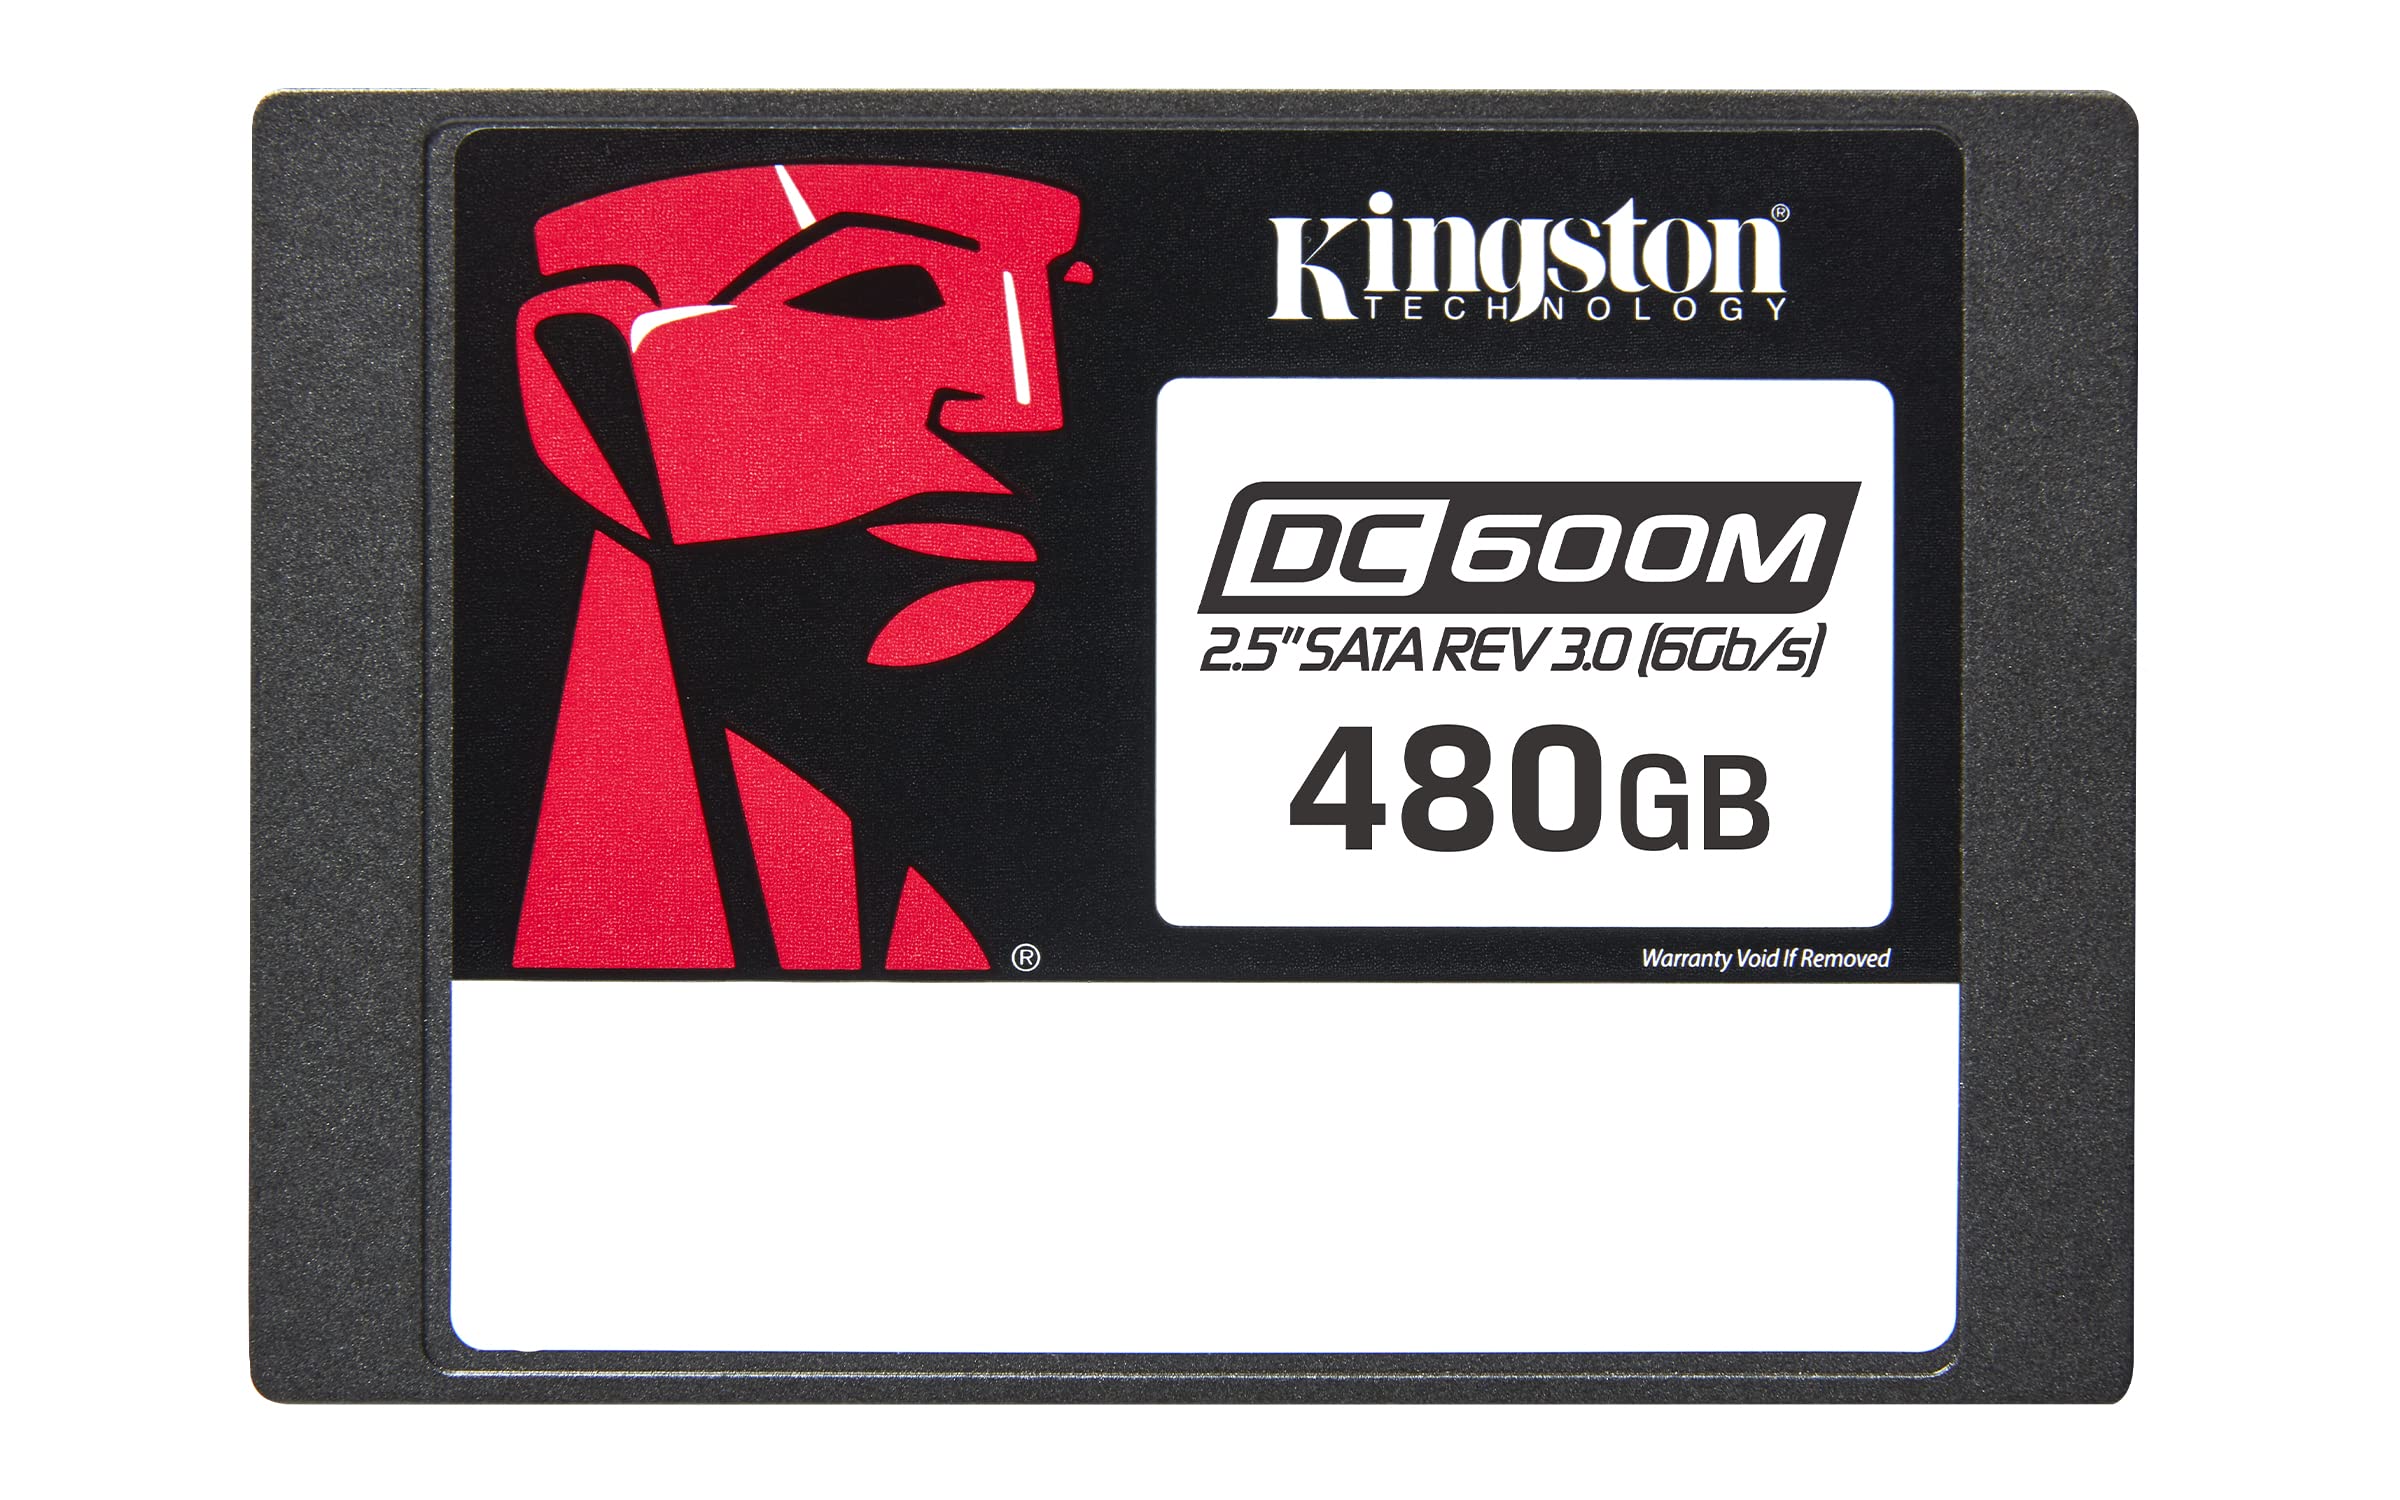 KINGSTON-SEDC600M/480G